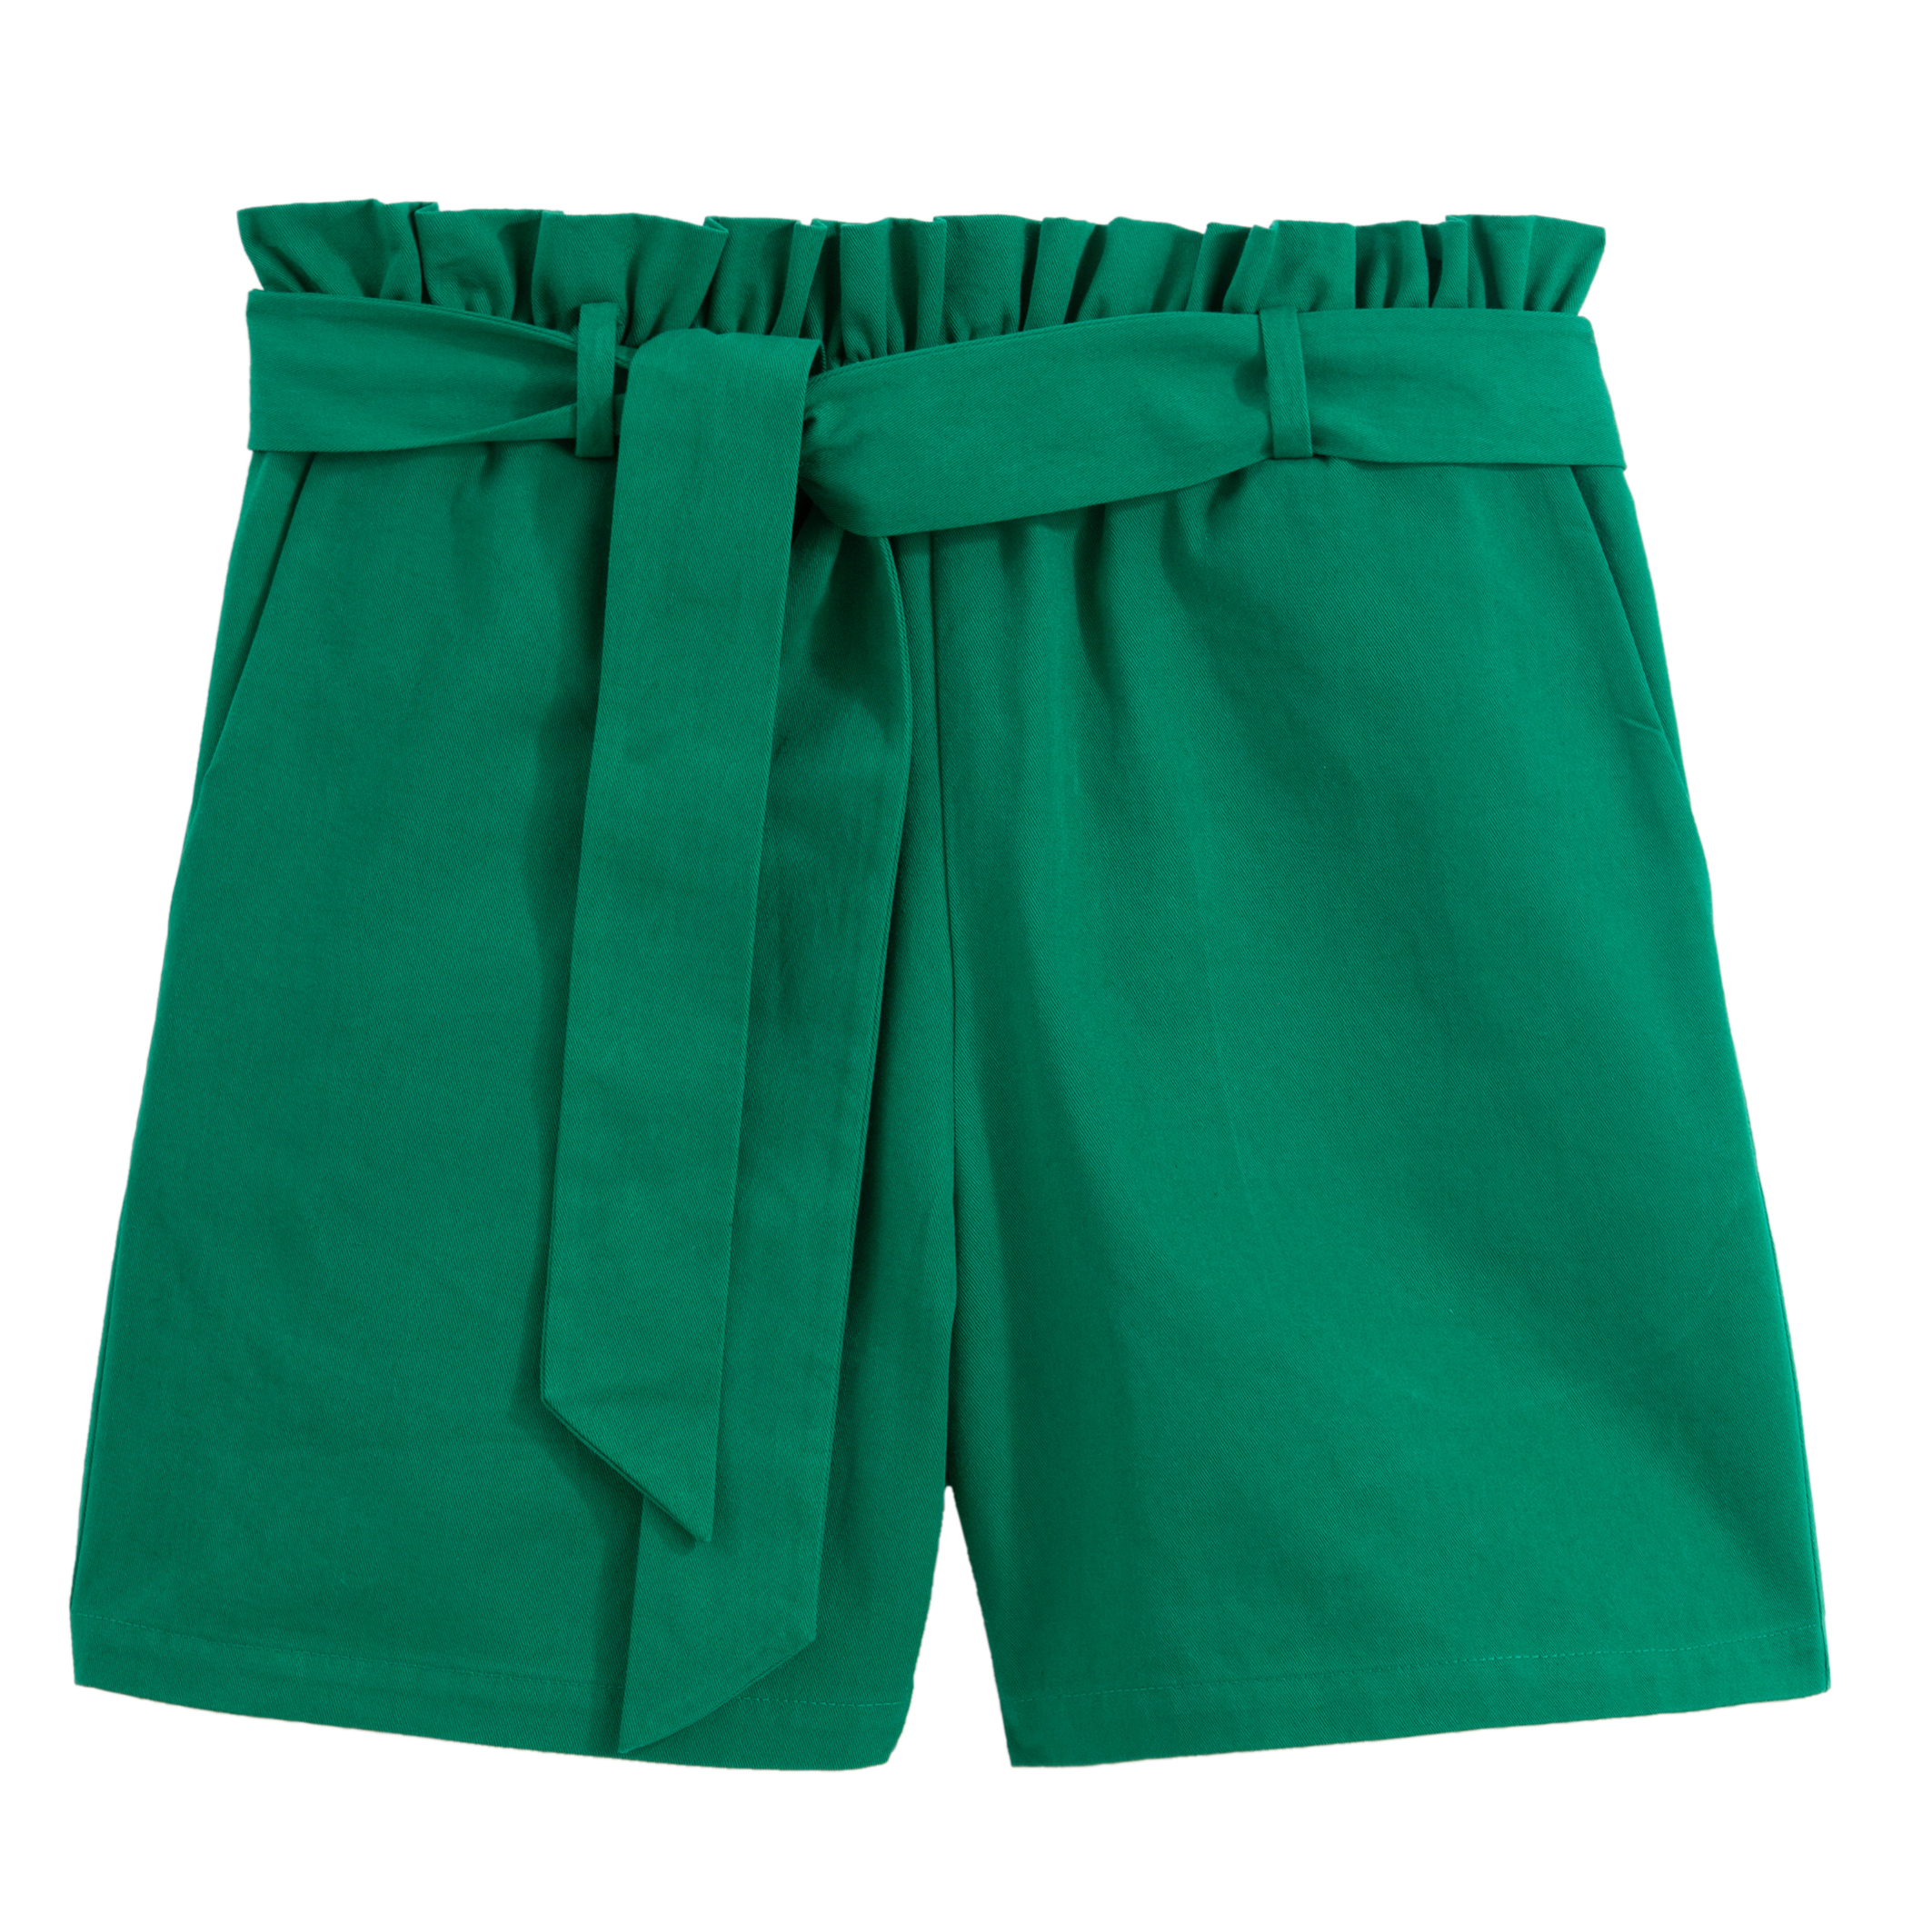 Зеленые шорты. Зеленые спортивные шорты женские. Модные зелёные шорты. Зелёные шорты Quechua.